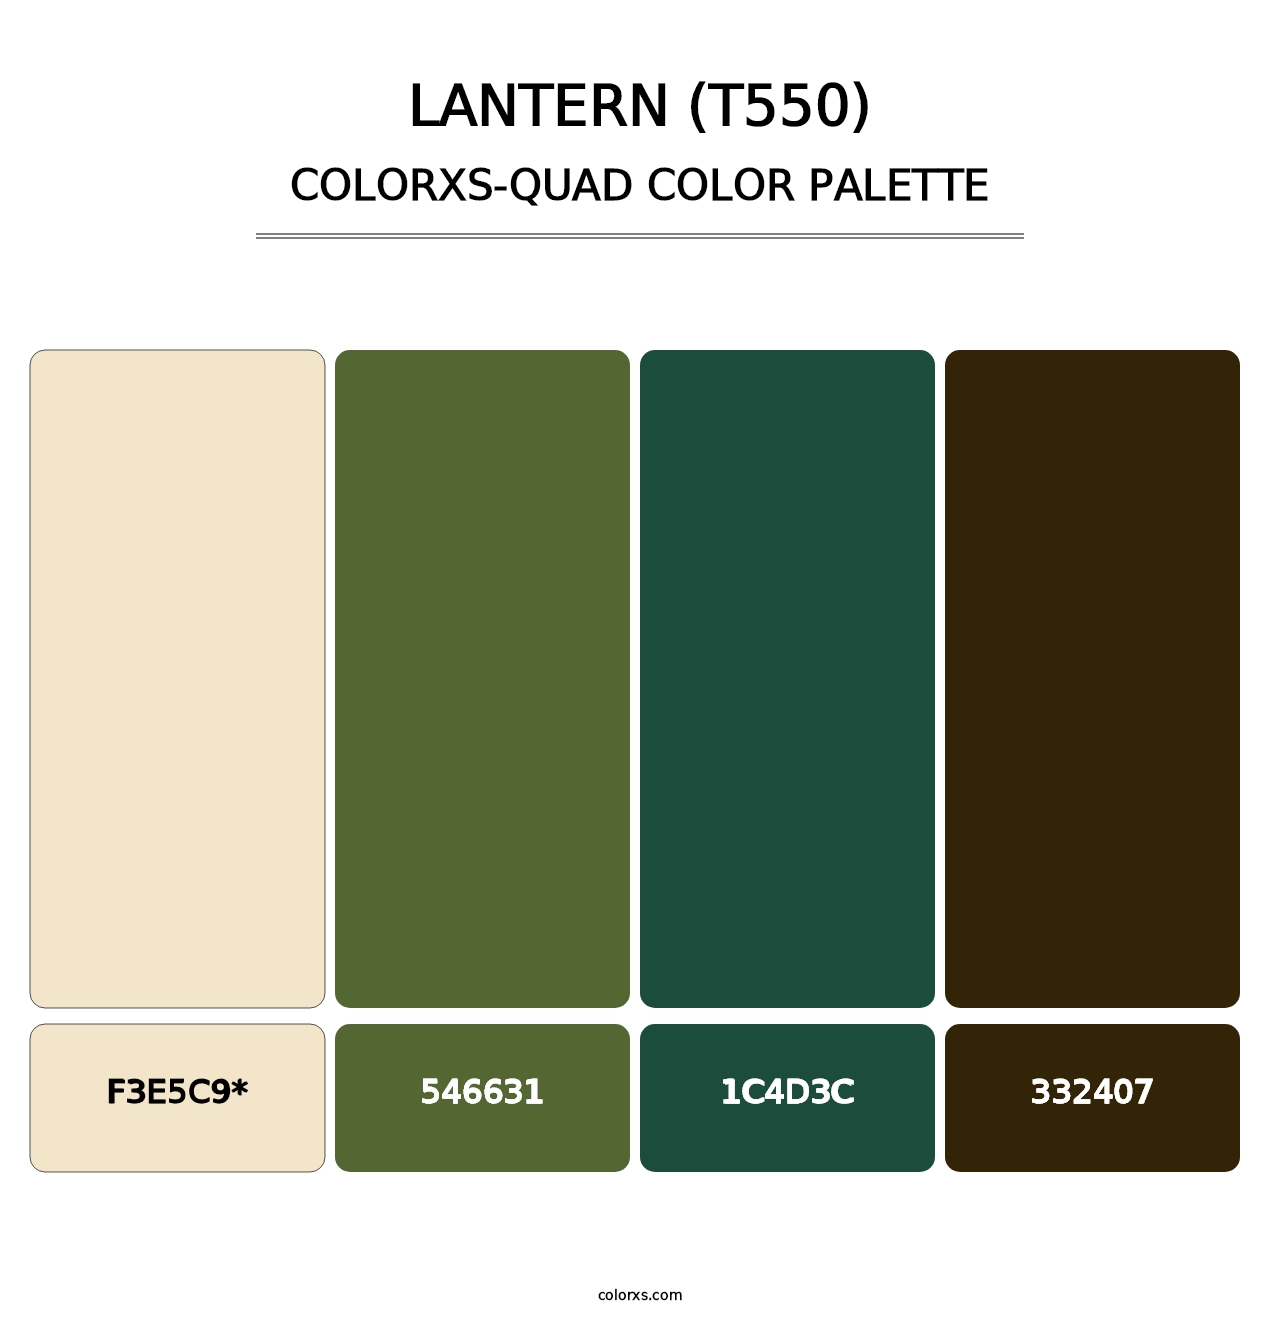 Lantern (T550) - Colorxs Quad Palette